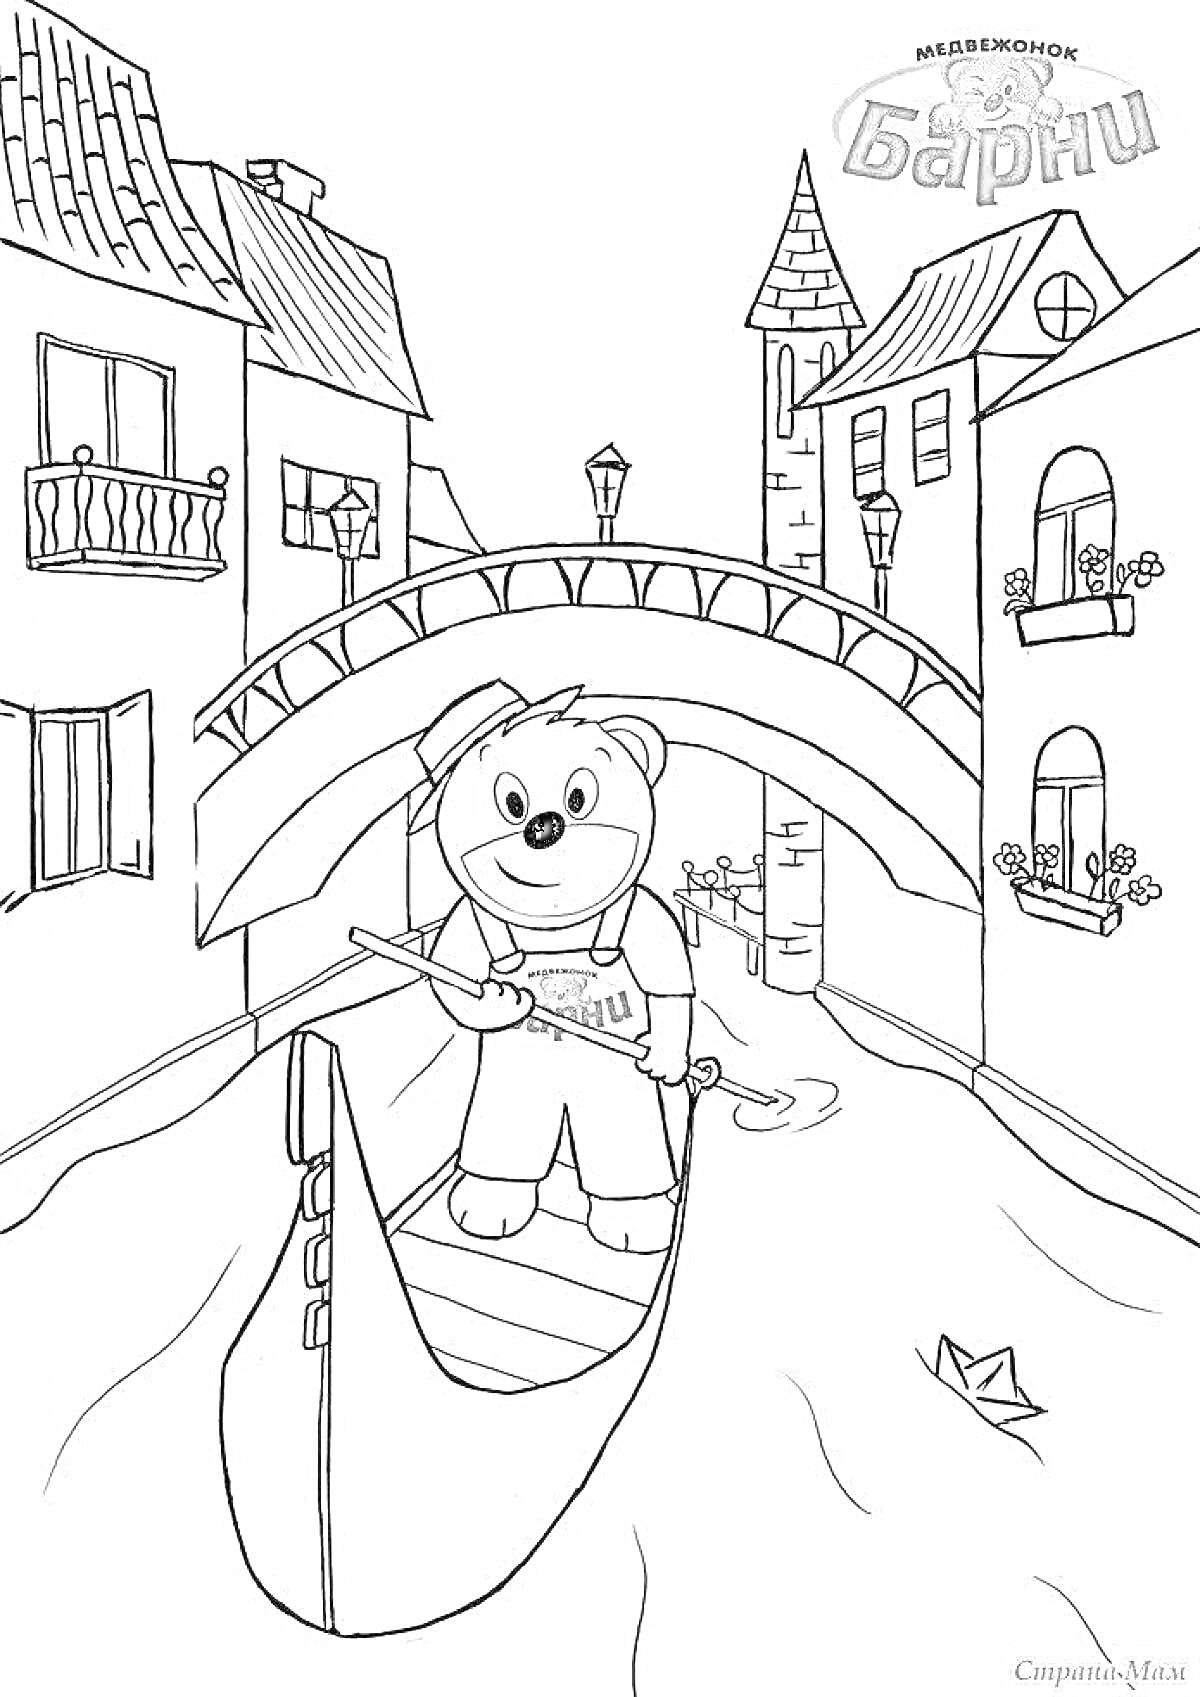 Раскраска Медвежонок Барни на гондоле под мостом в канале города с домами